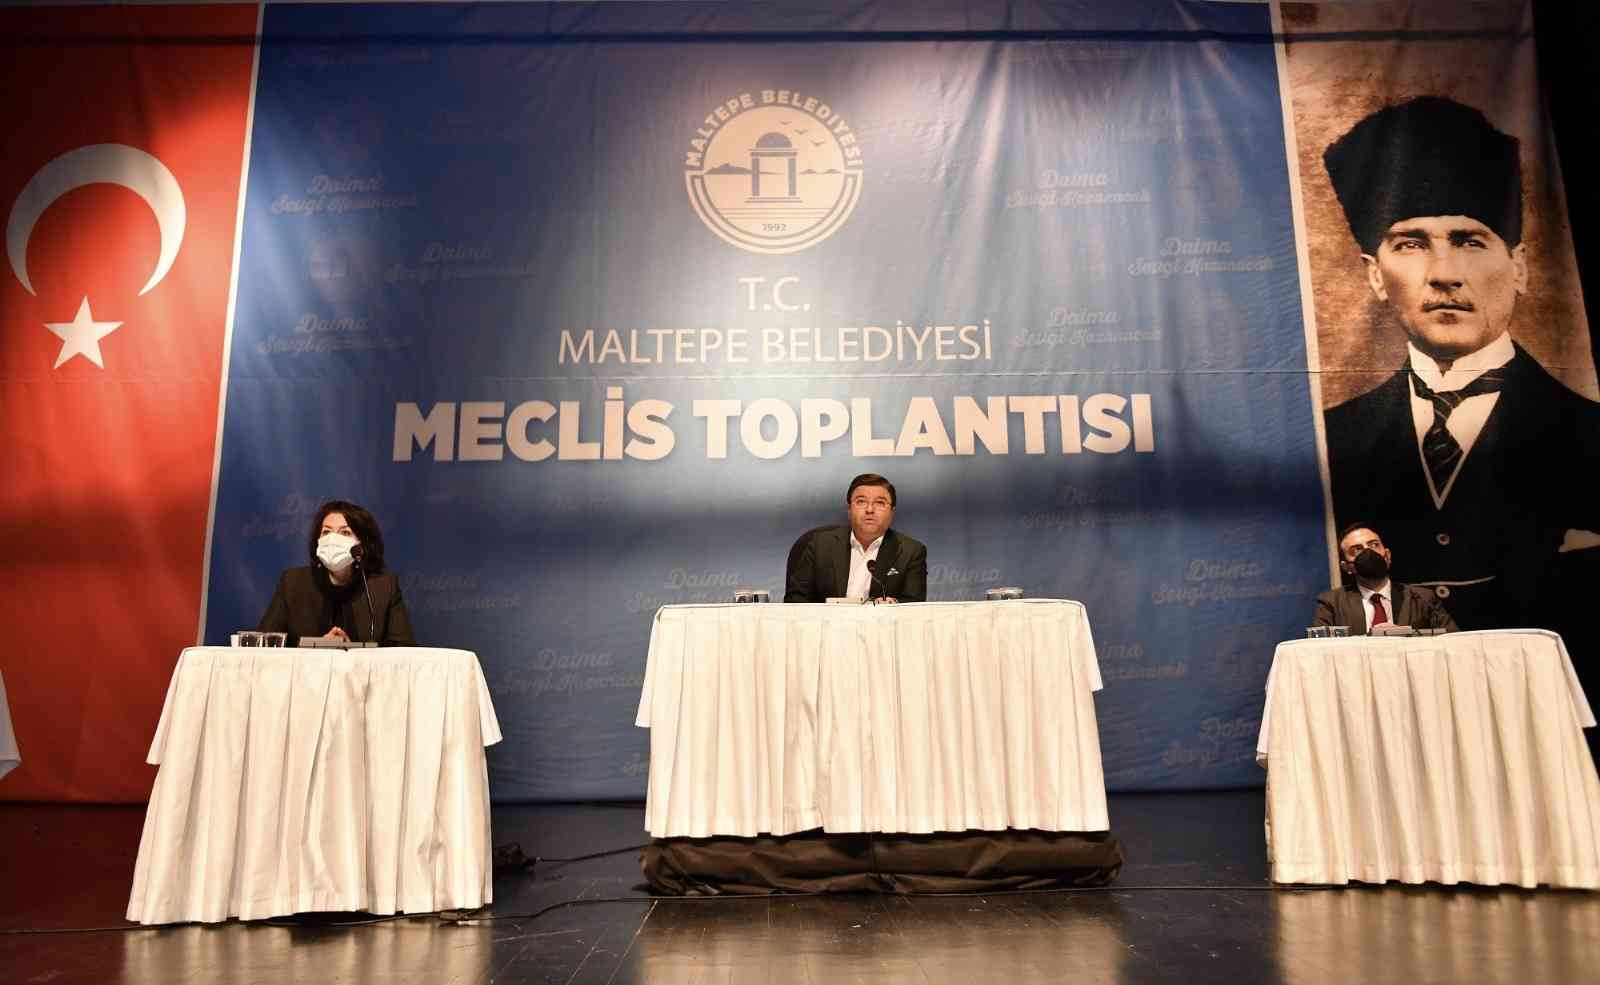 Maltepe’de yeni yılın ilk meclis toplantısında çifte müjde #istanbul